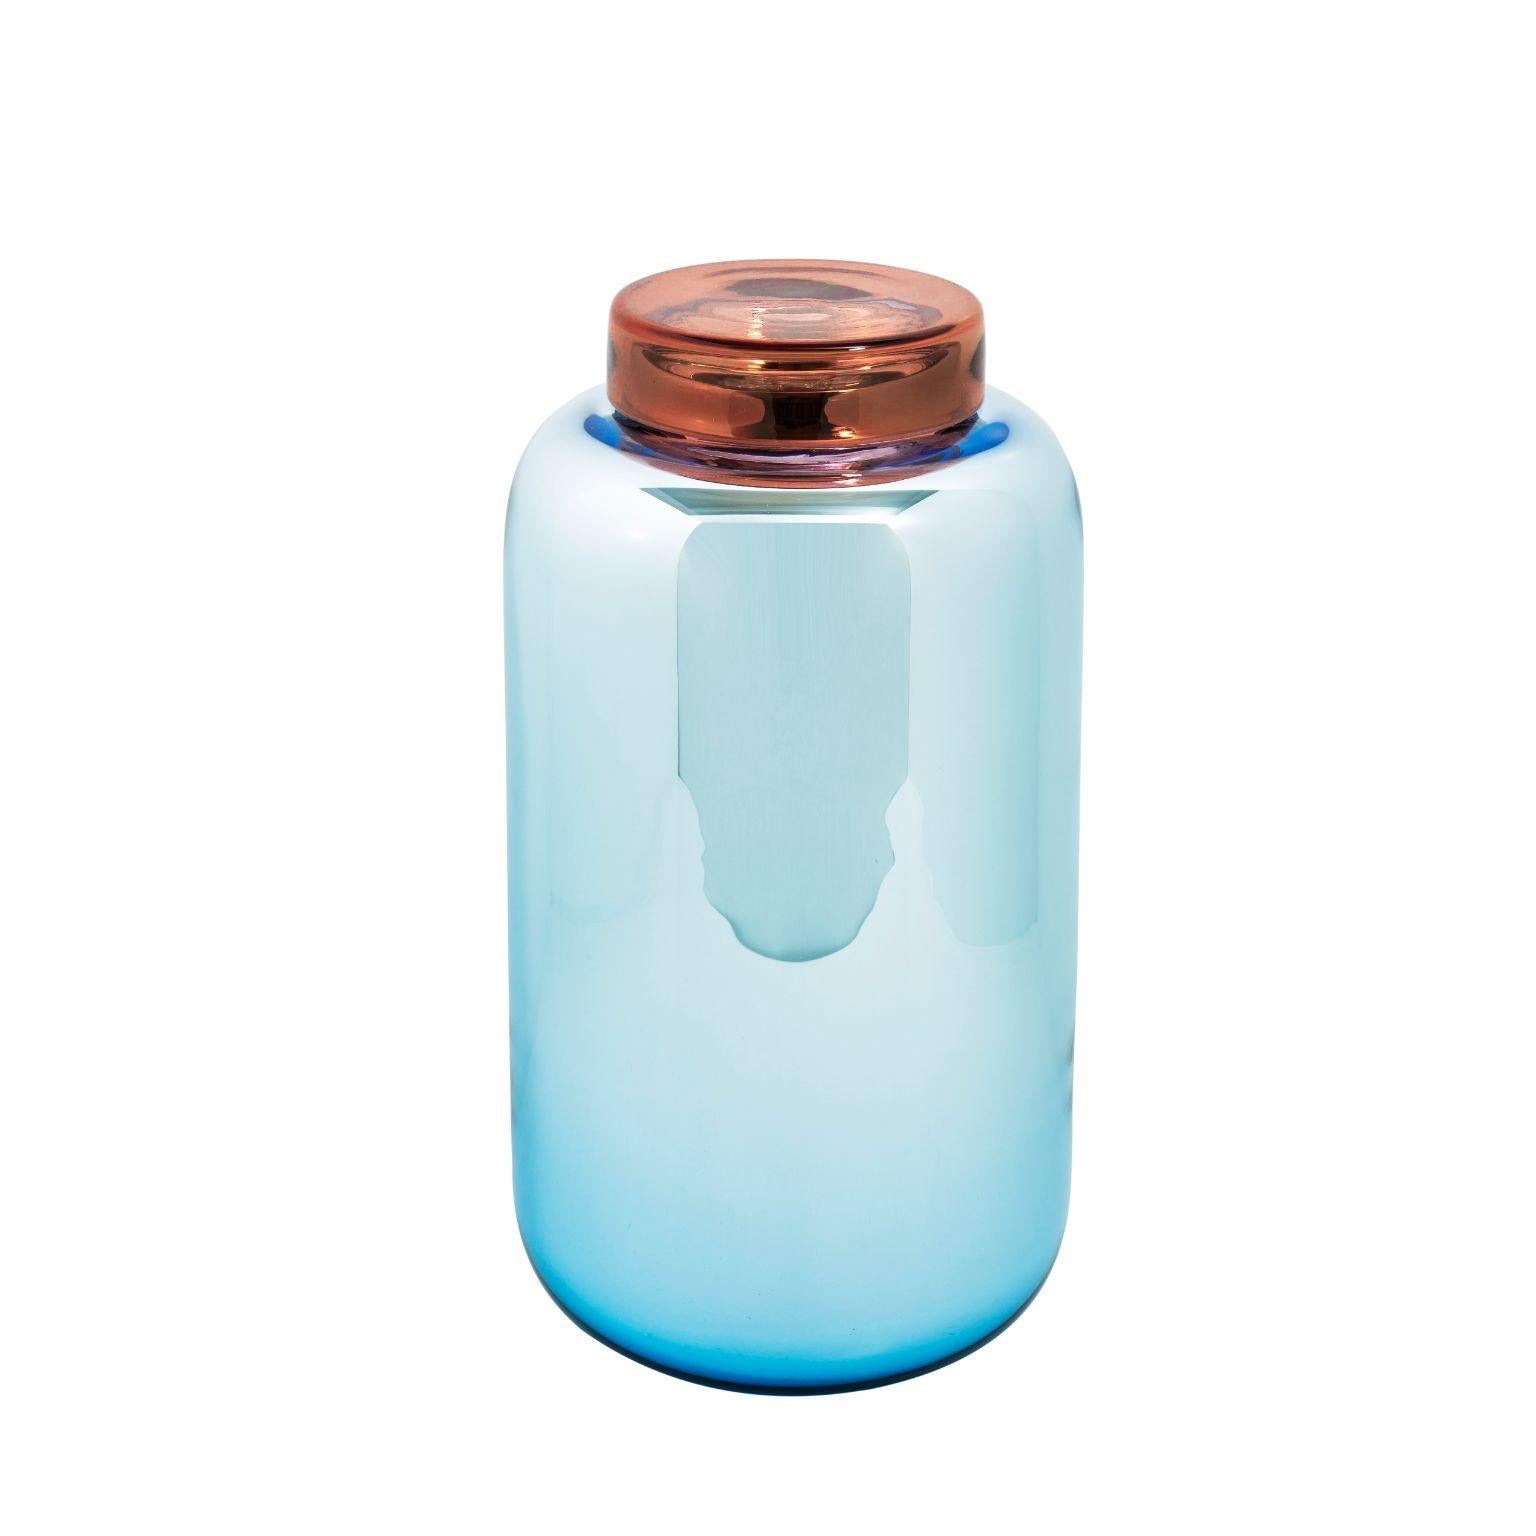 Container vase et boîte bleu rouge à haute luminosité de Pulpo
Dimensions : P16,5 x H30 cm.
MATERIAL : verre fait à la main.

Disponible également en différentes couleurs. 

Une collection décorative de formes courbes, pleine de vie, entre